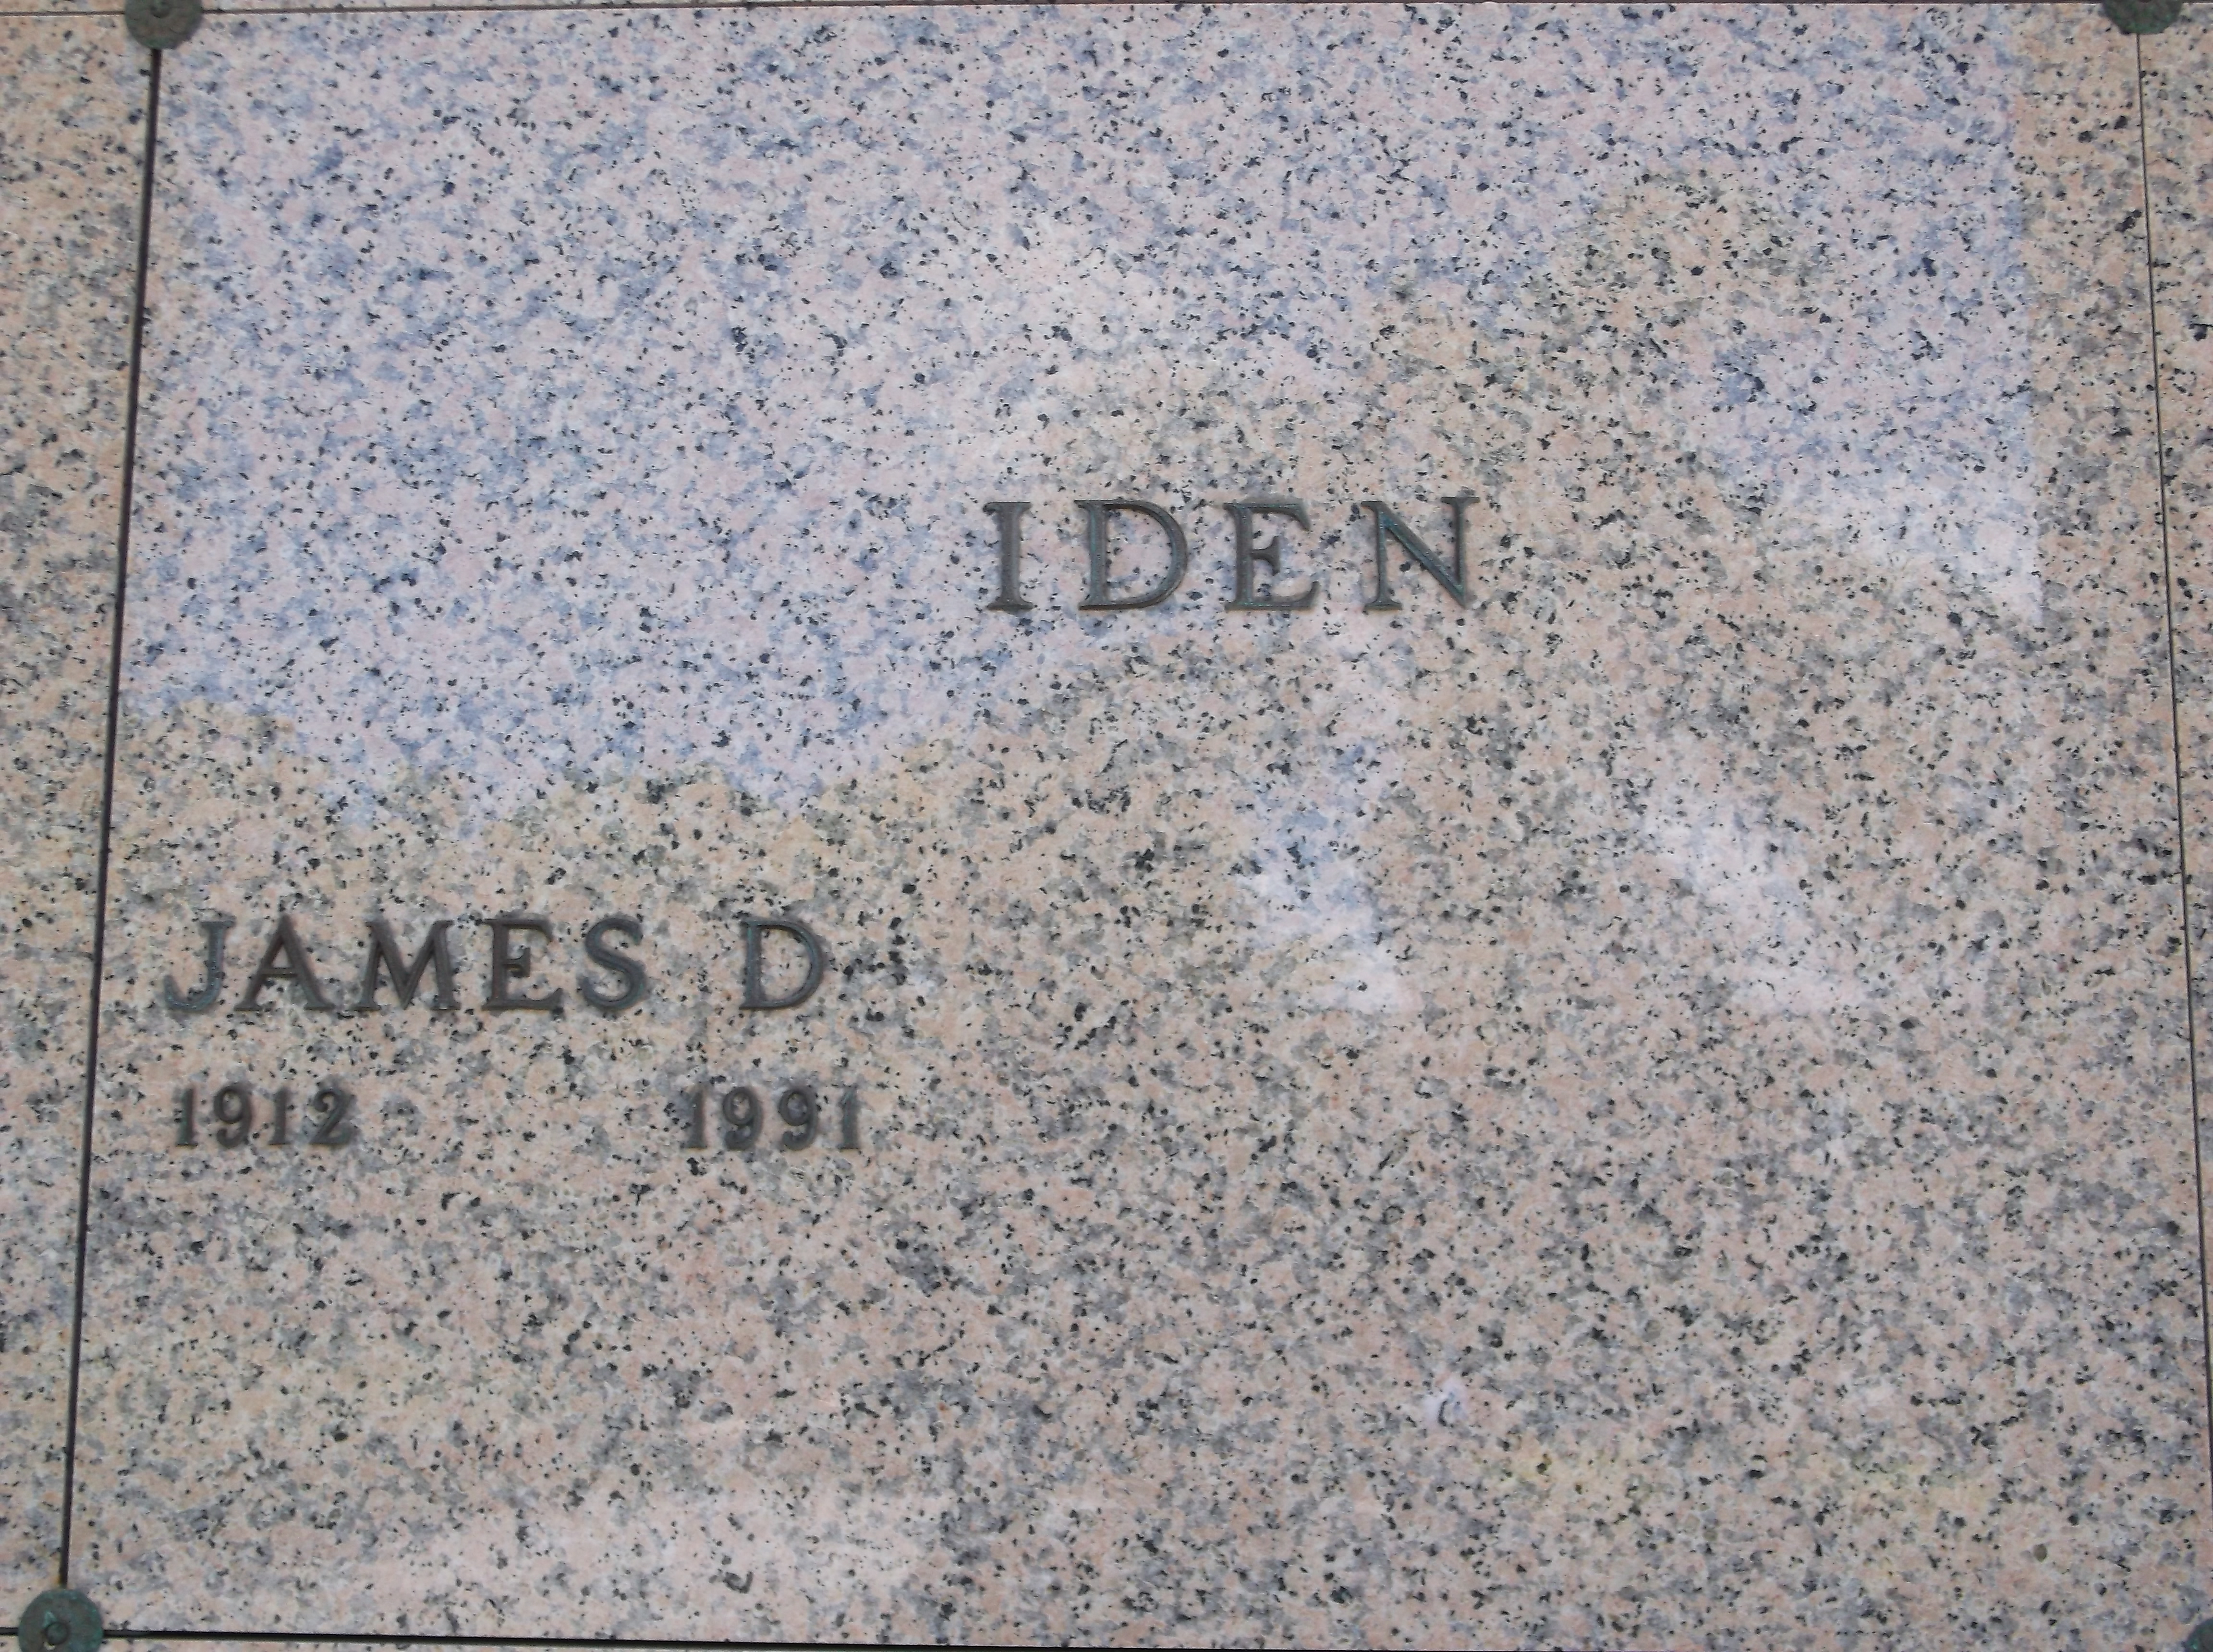 James D Iden